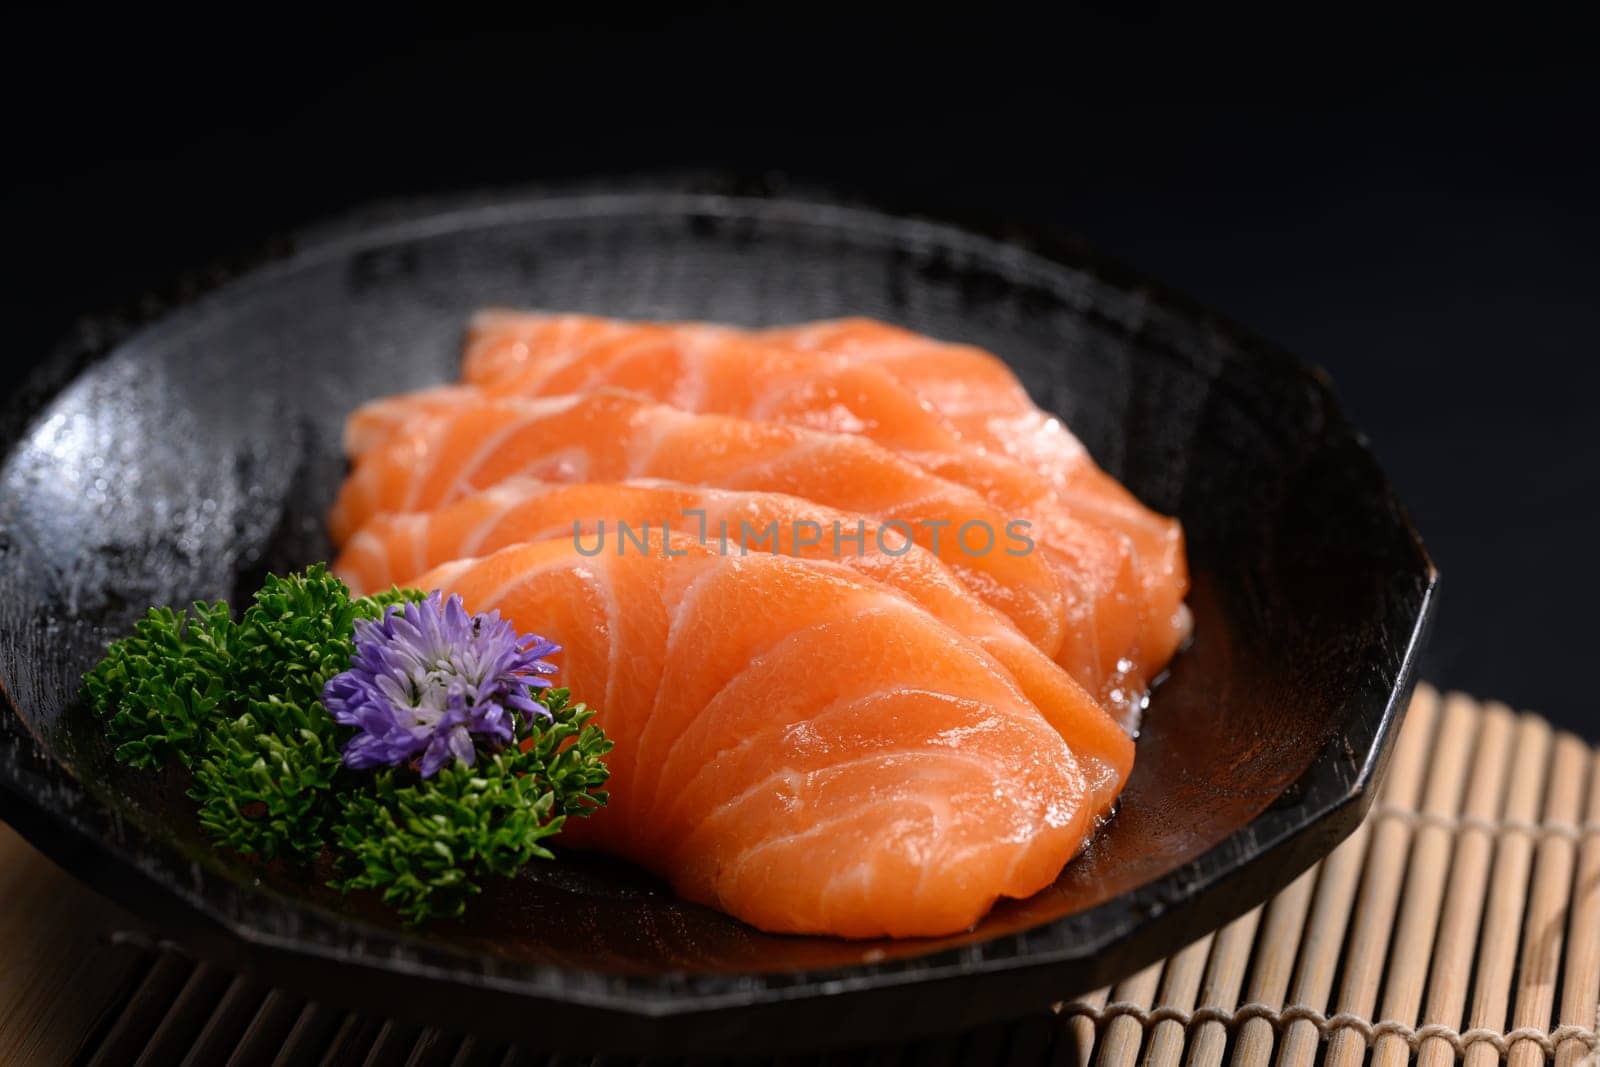 Salmon sashimi on black plate with parsley leaf. Japanese food style.